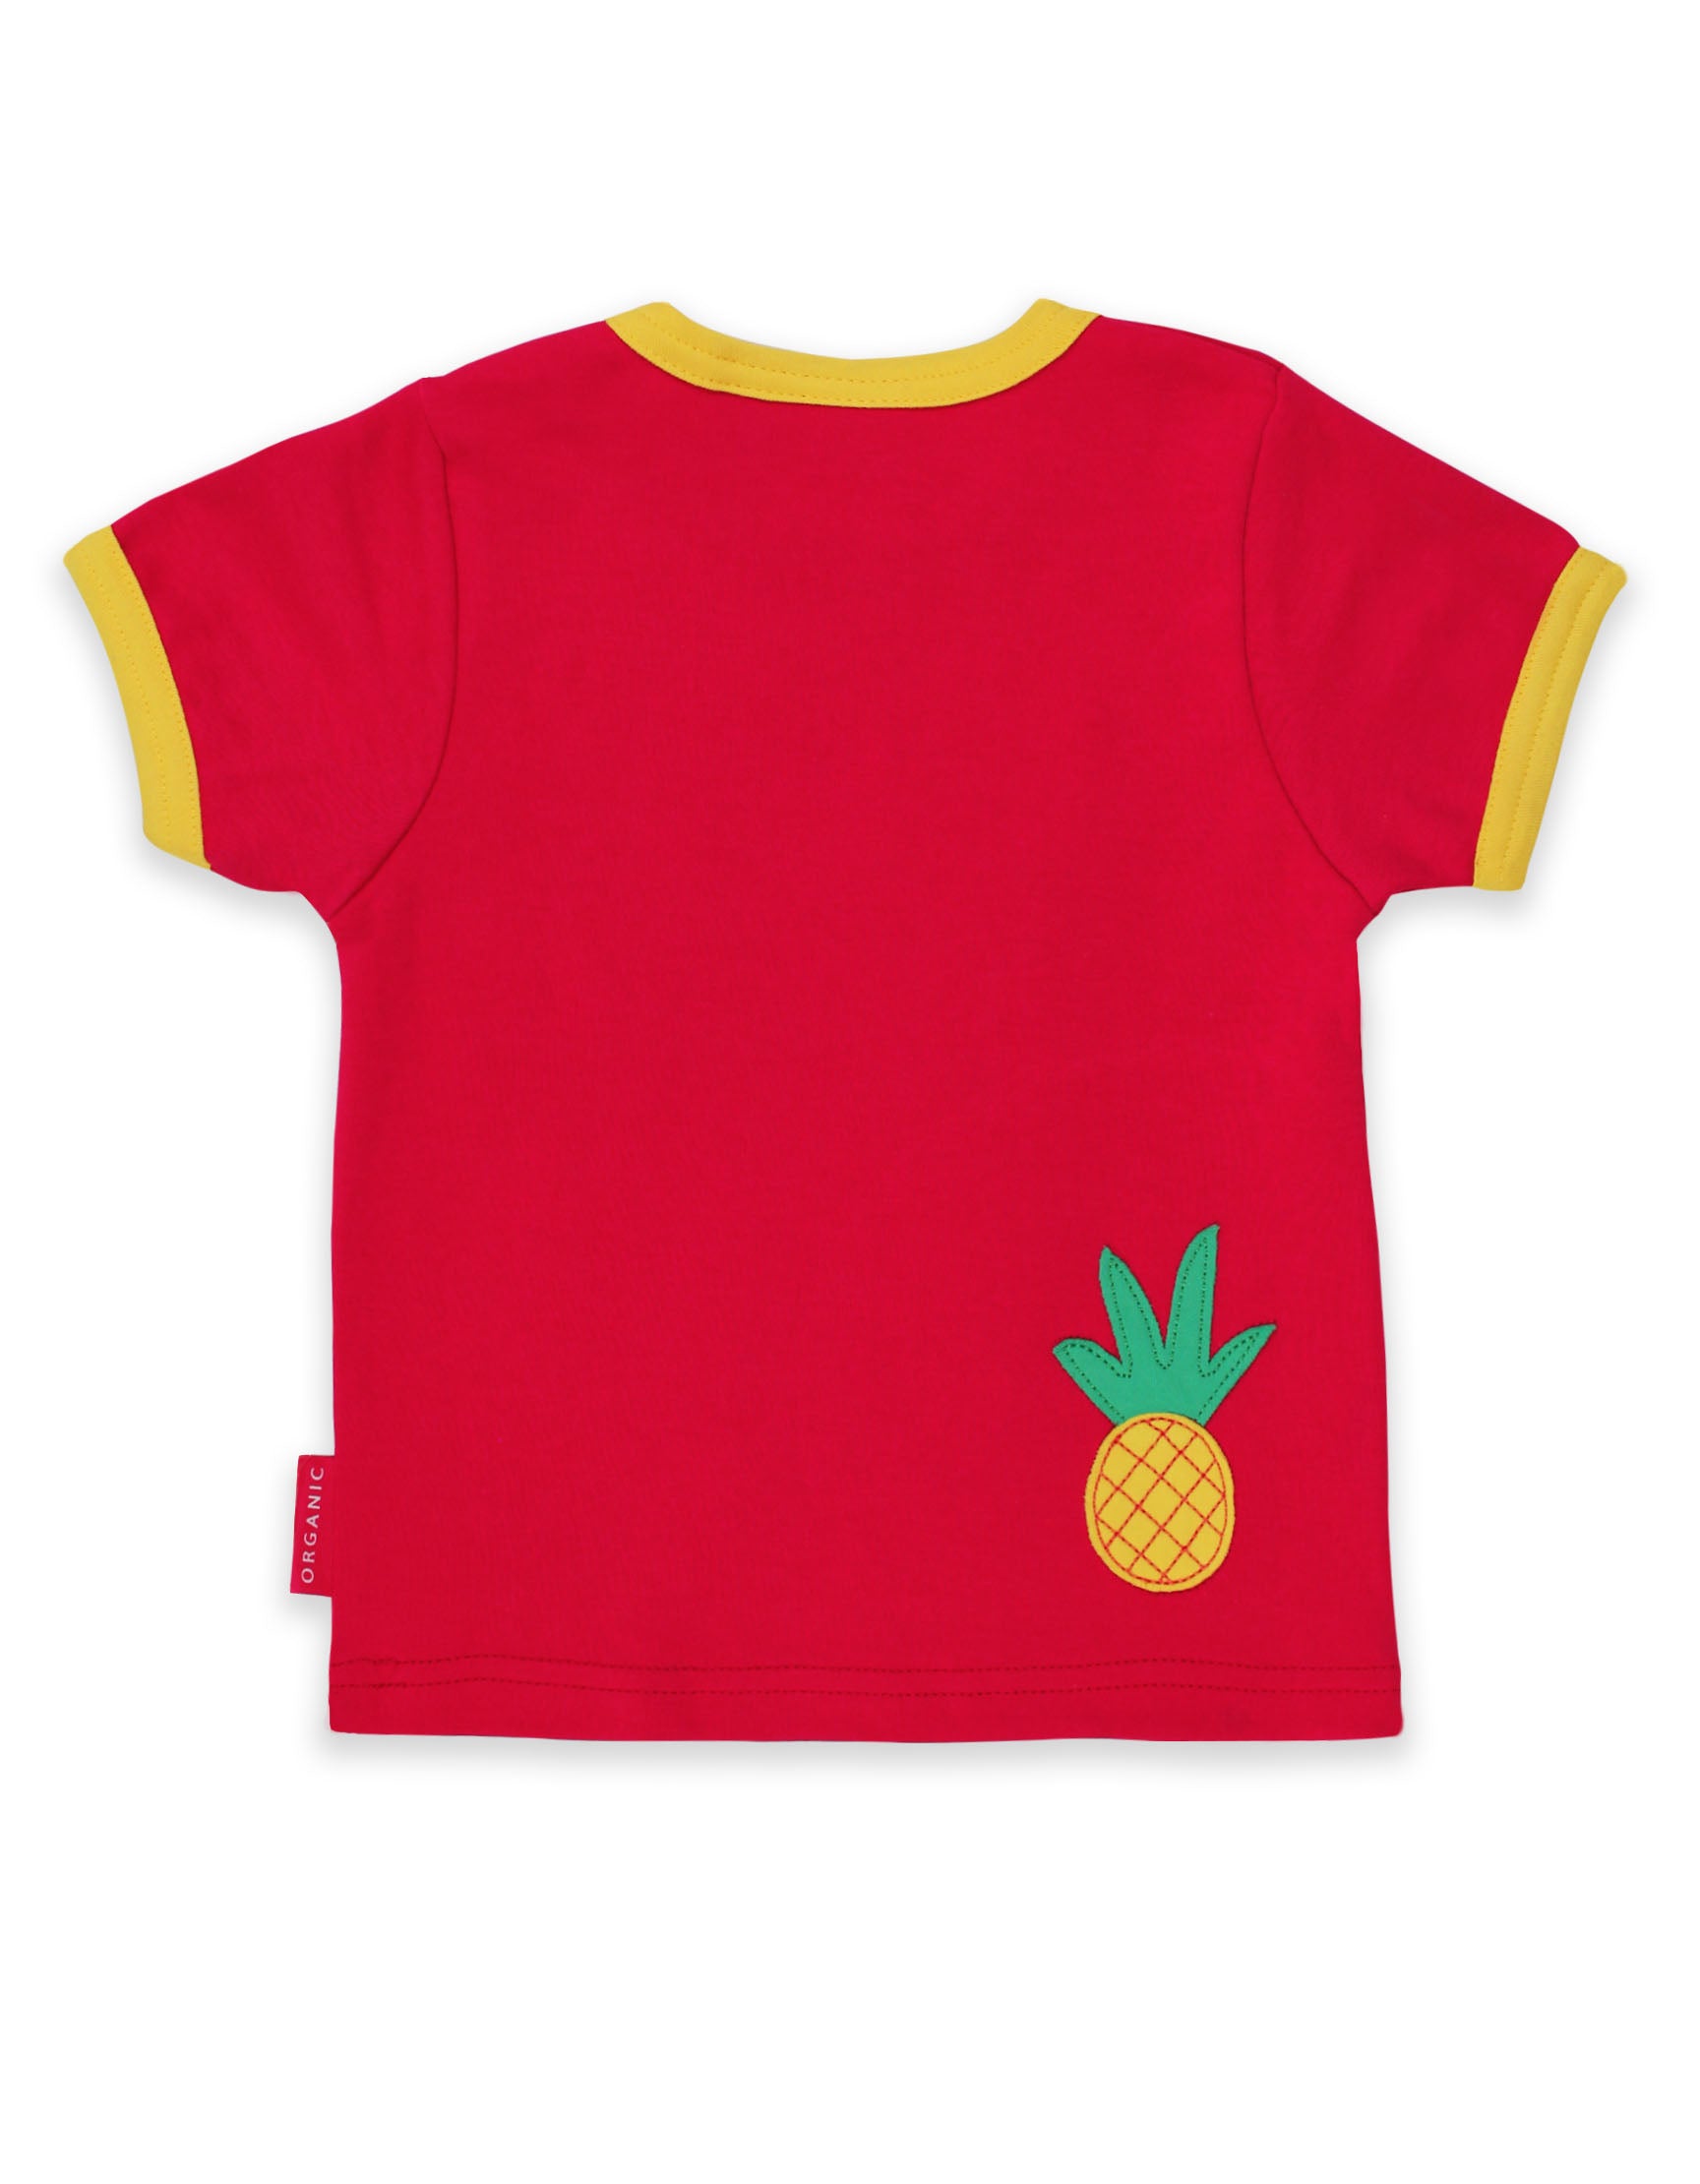 Toby Tiger Organic Short Sleeve T-Shirt - Giraffe Applique